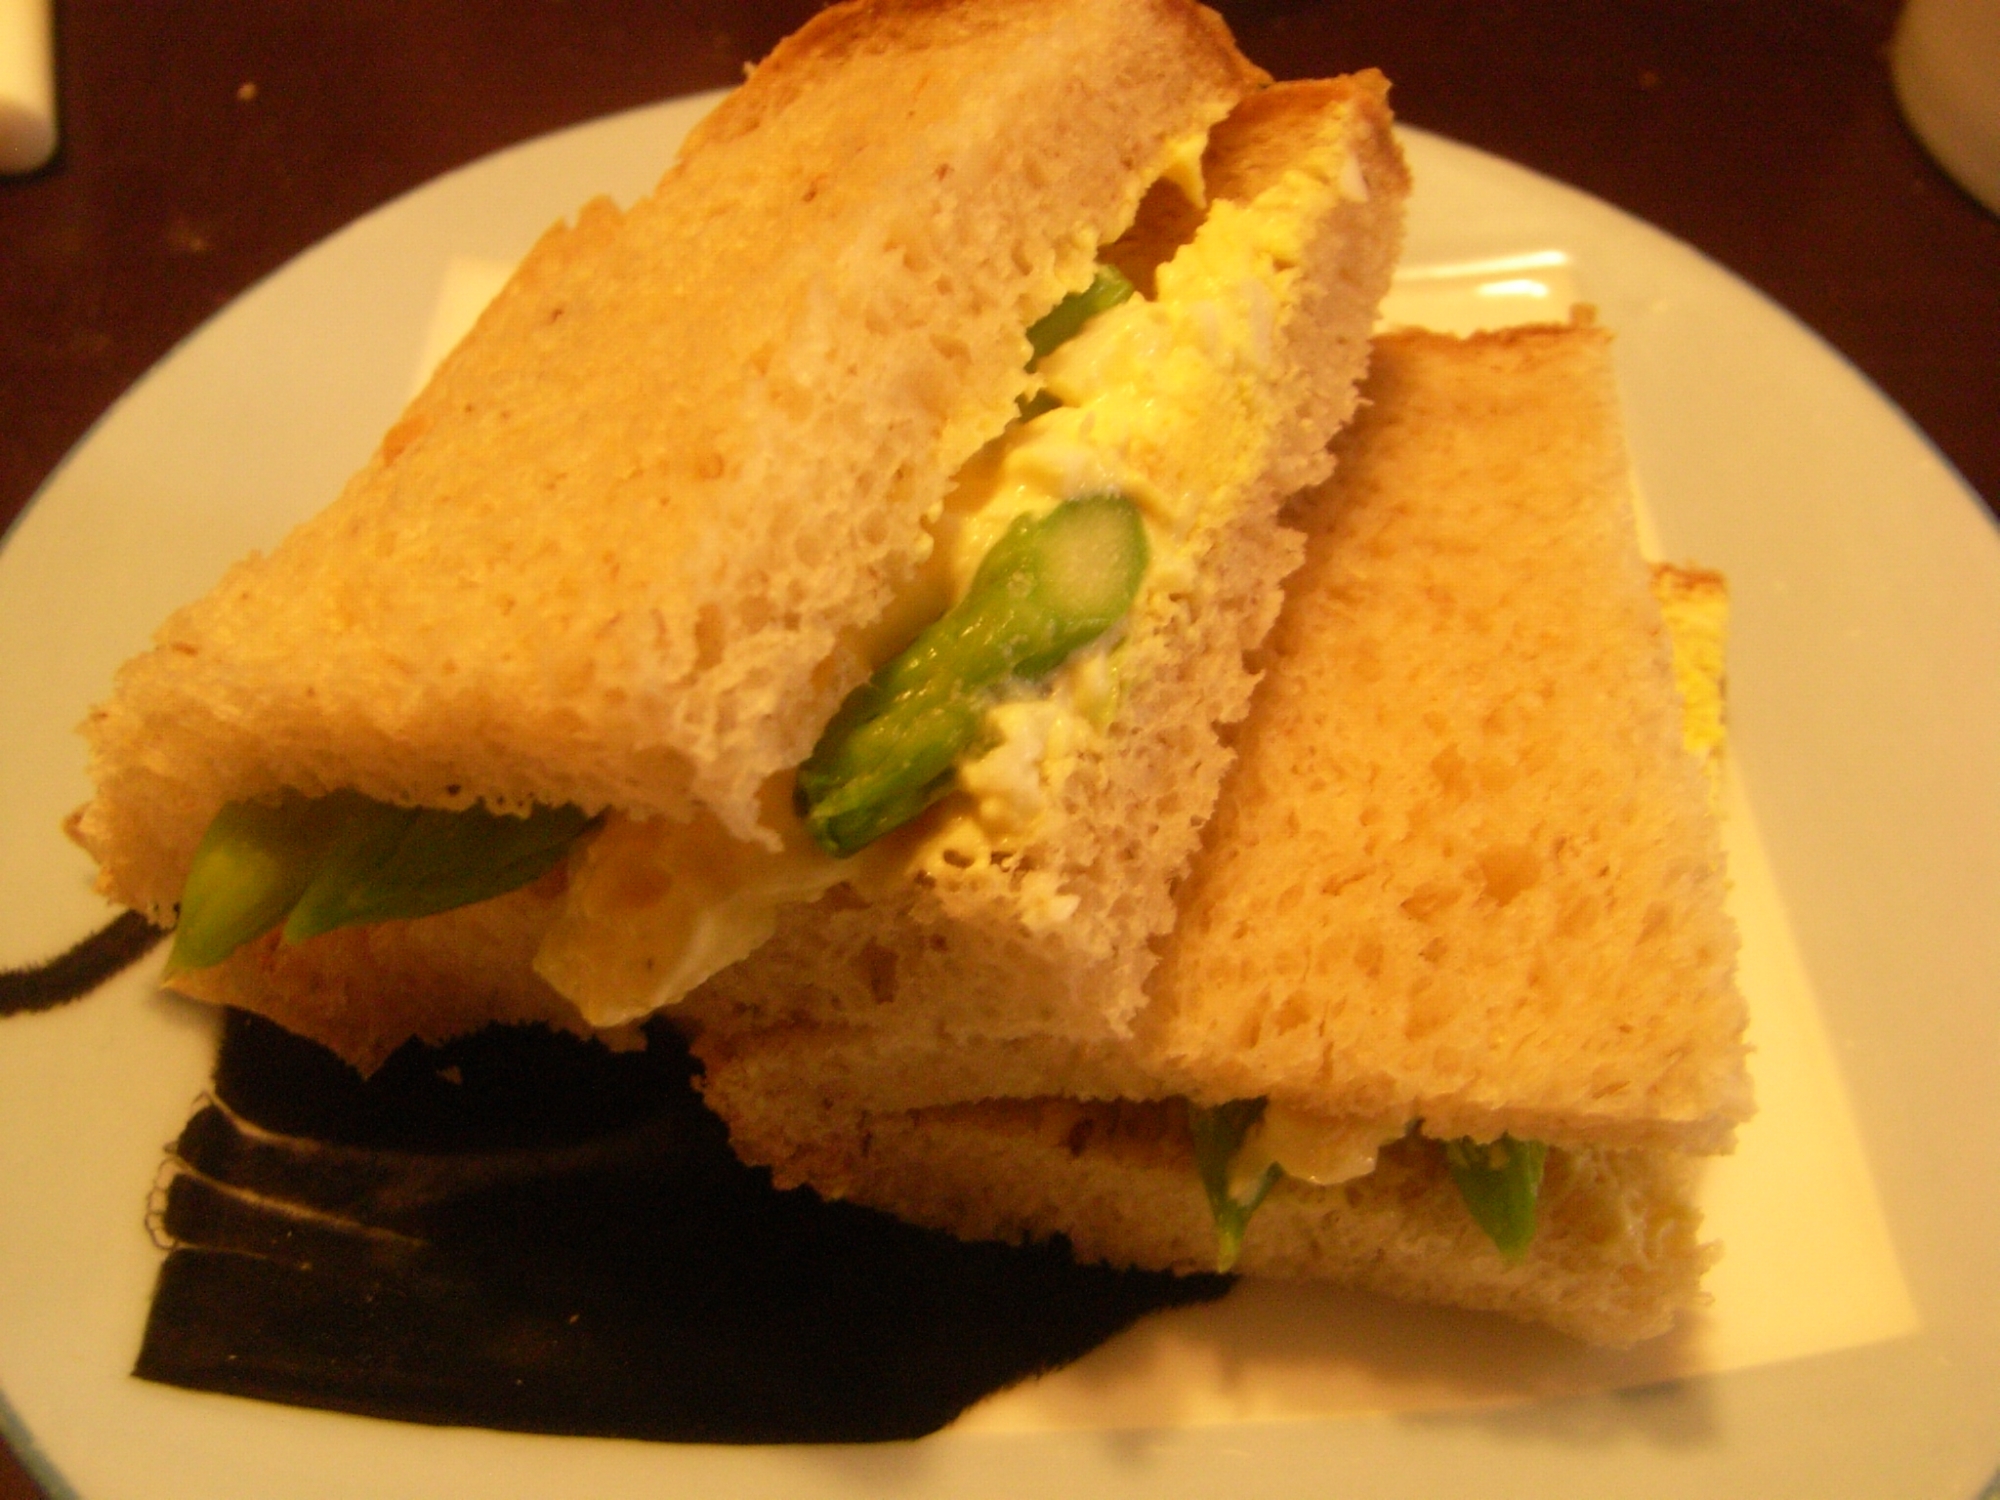 アスパラガスと卵のサンドイッチ